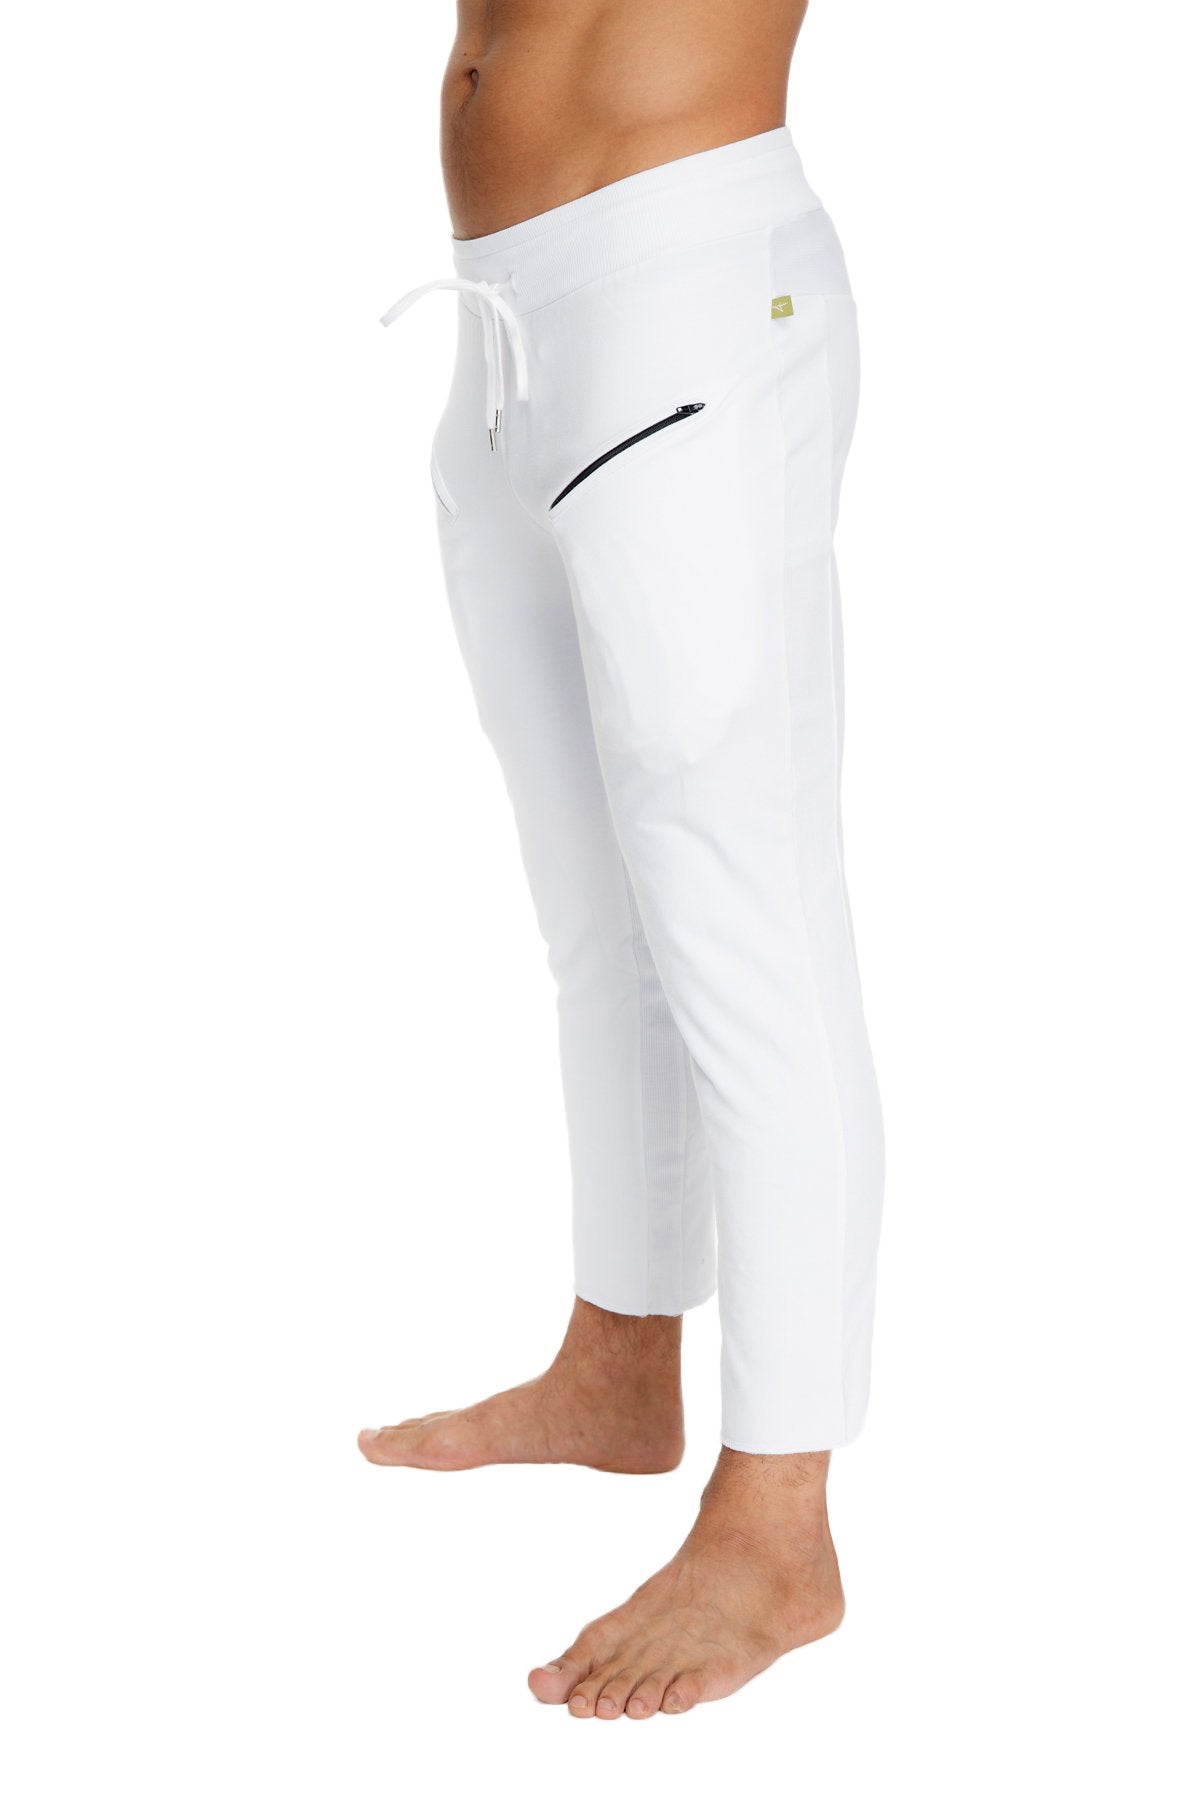 white capri yoga pants